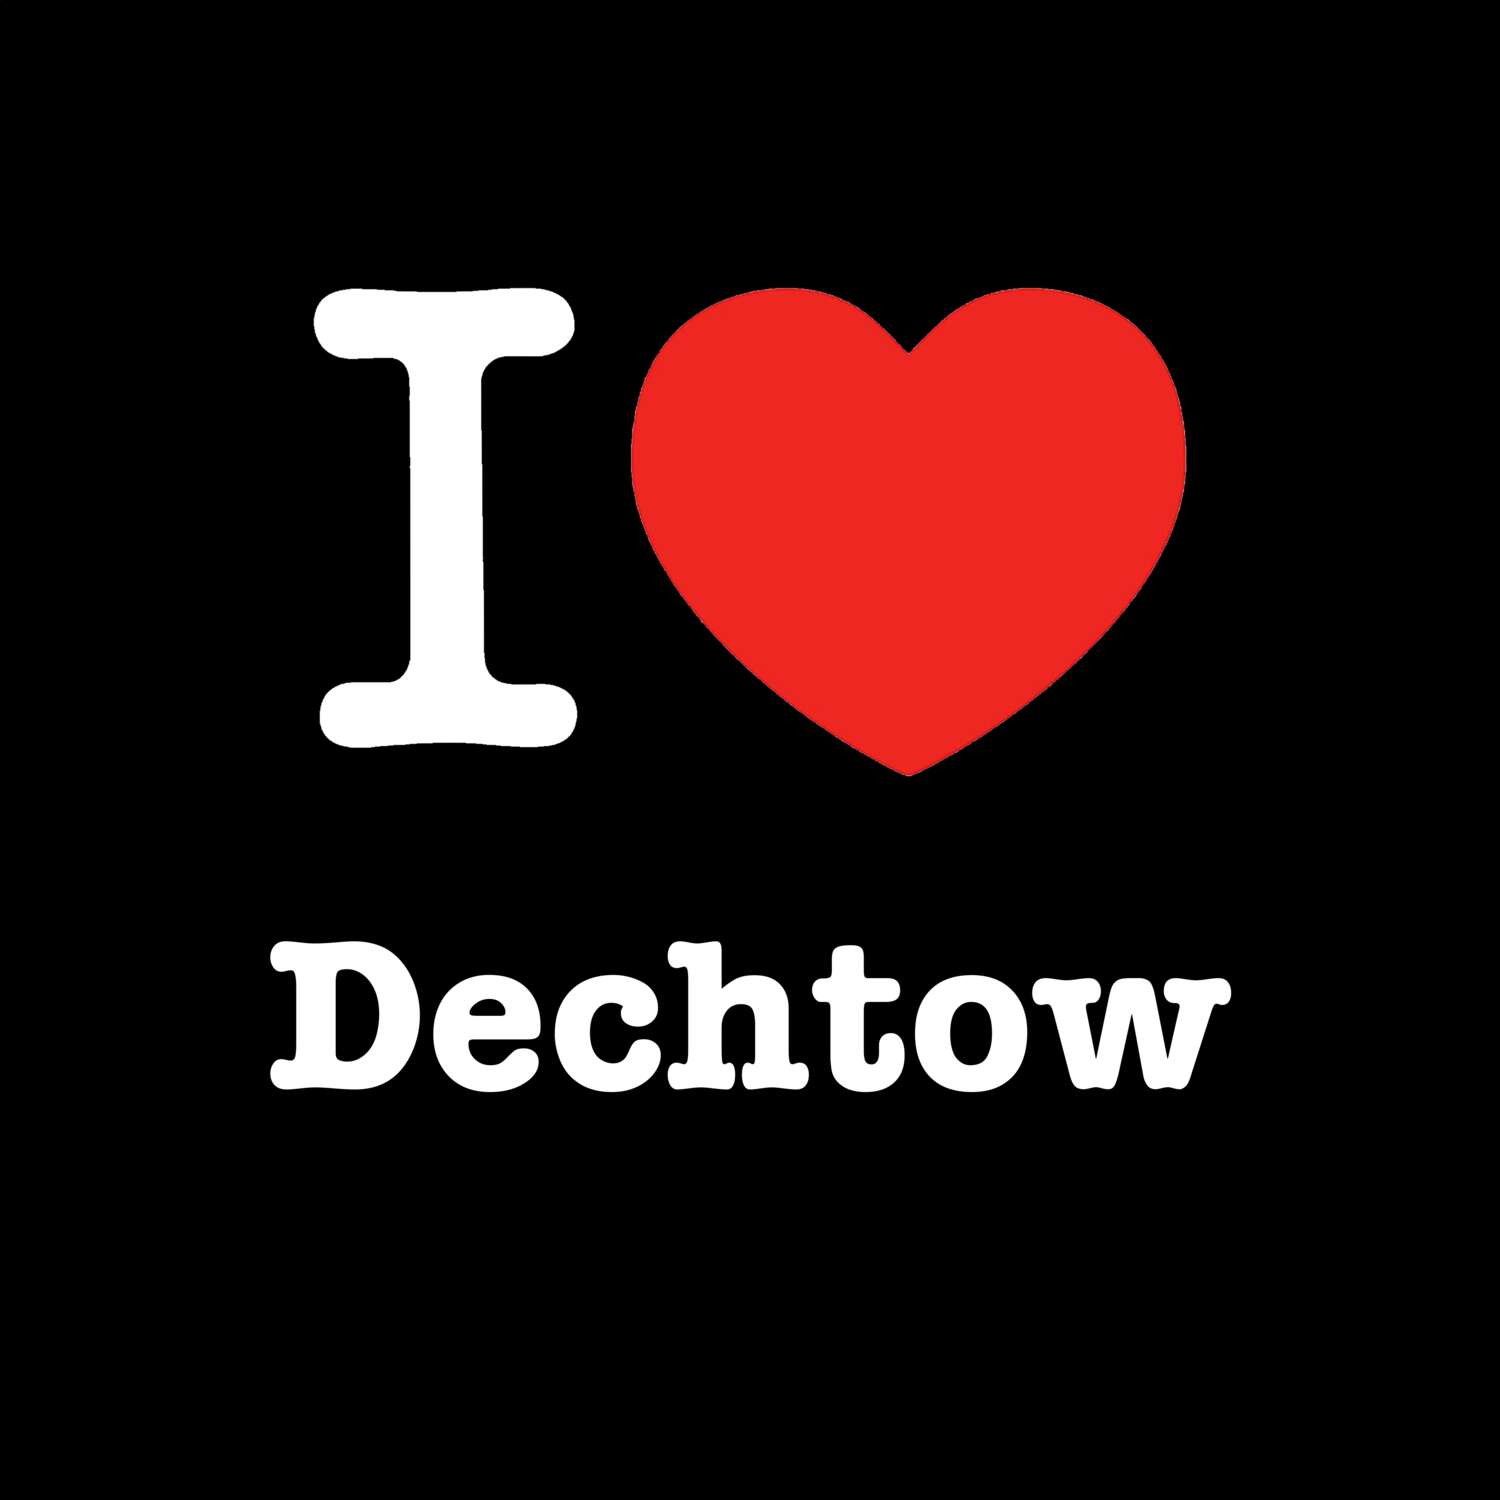 Dechtow T-Shirt »I love«